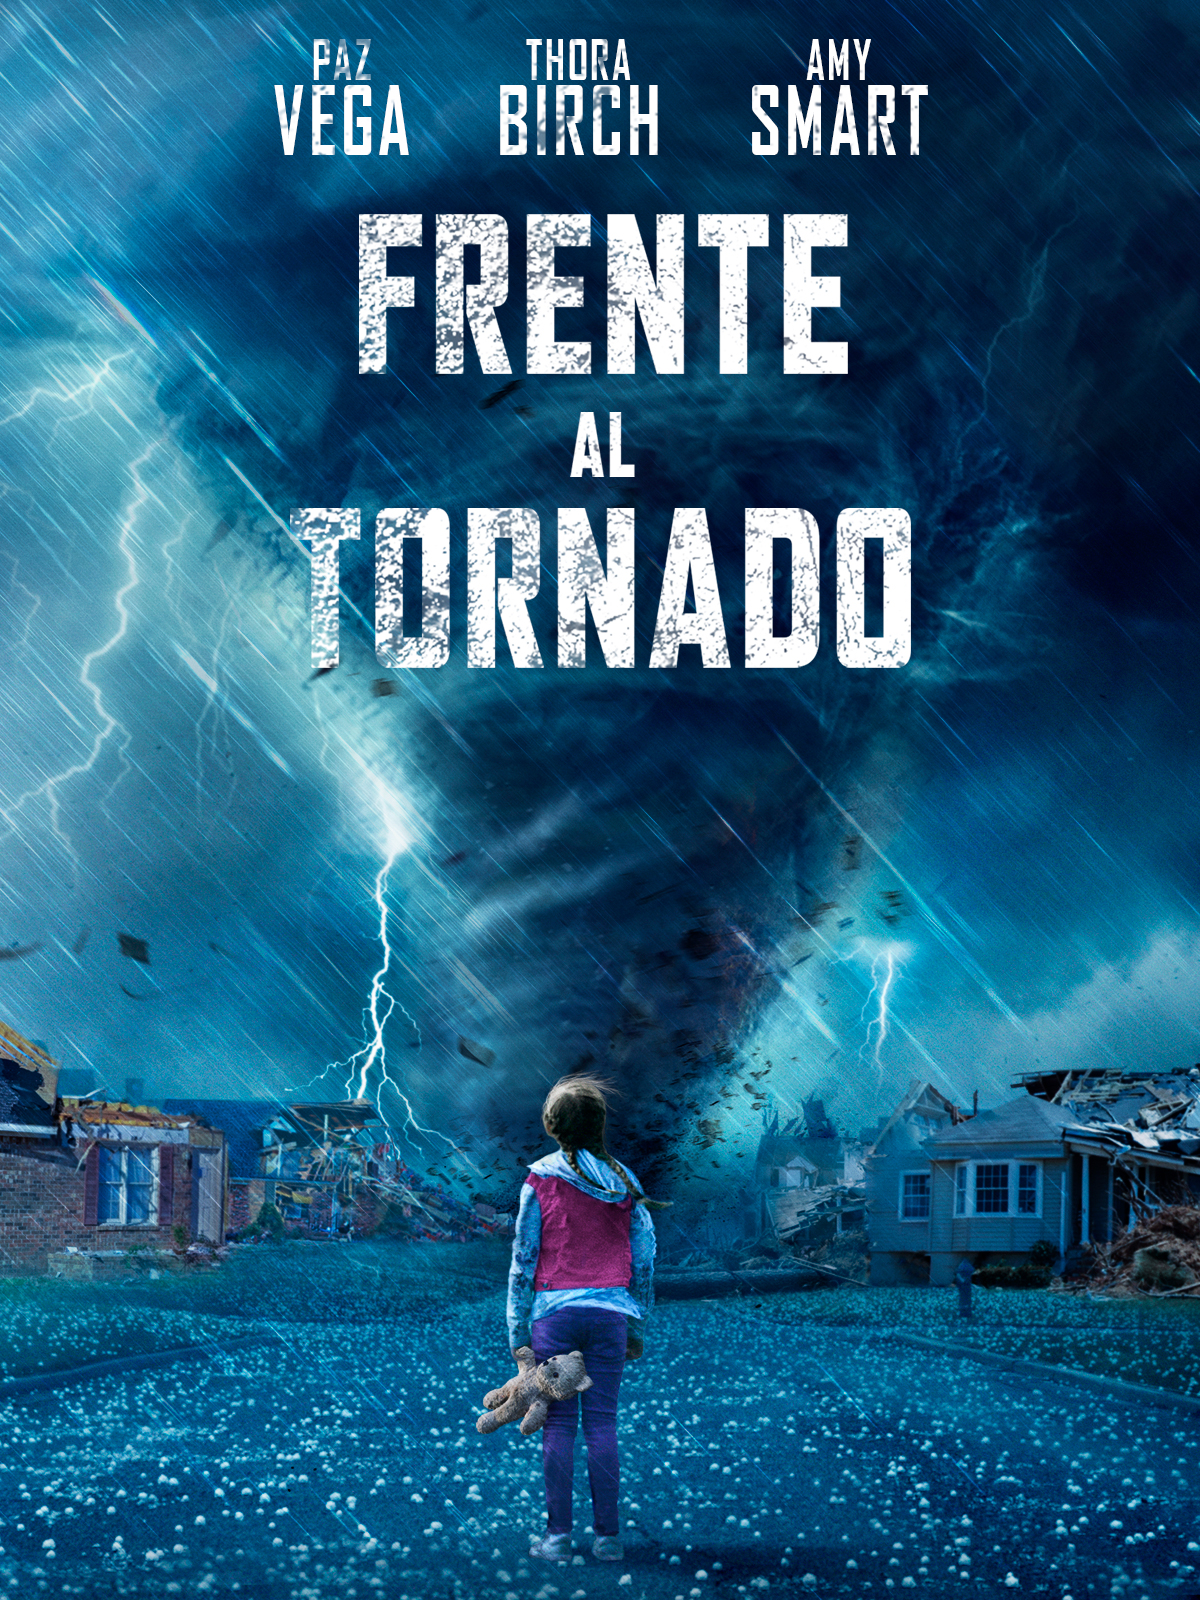 Frente al tornado - Poster promocional de la película Frente al tornado, con Paz Vega, Thora Birch y Amy Smart, del catálogo de Youplanet Pictures productora cinematográfica y distribuidora de cine